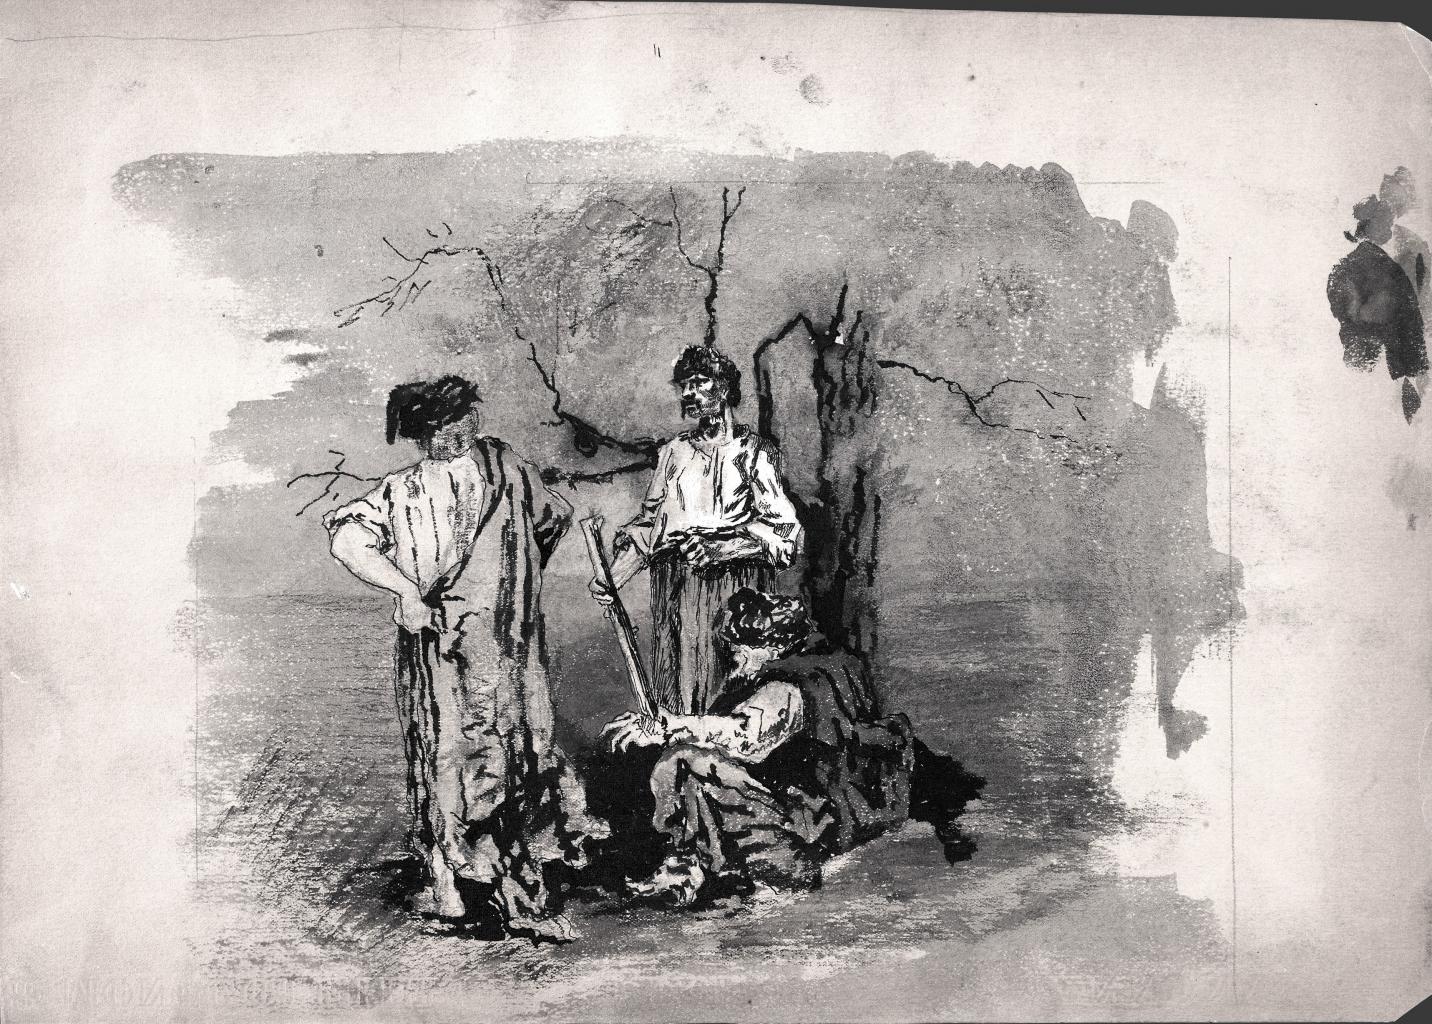 Н.К.Рерих. Трое запорожцев у сломанного дерева. 1894-1895